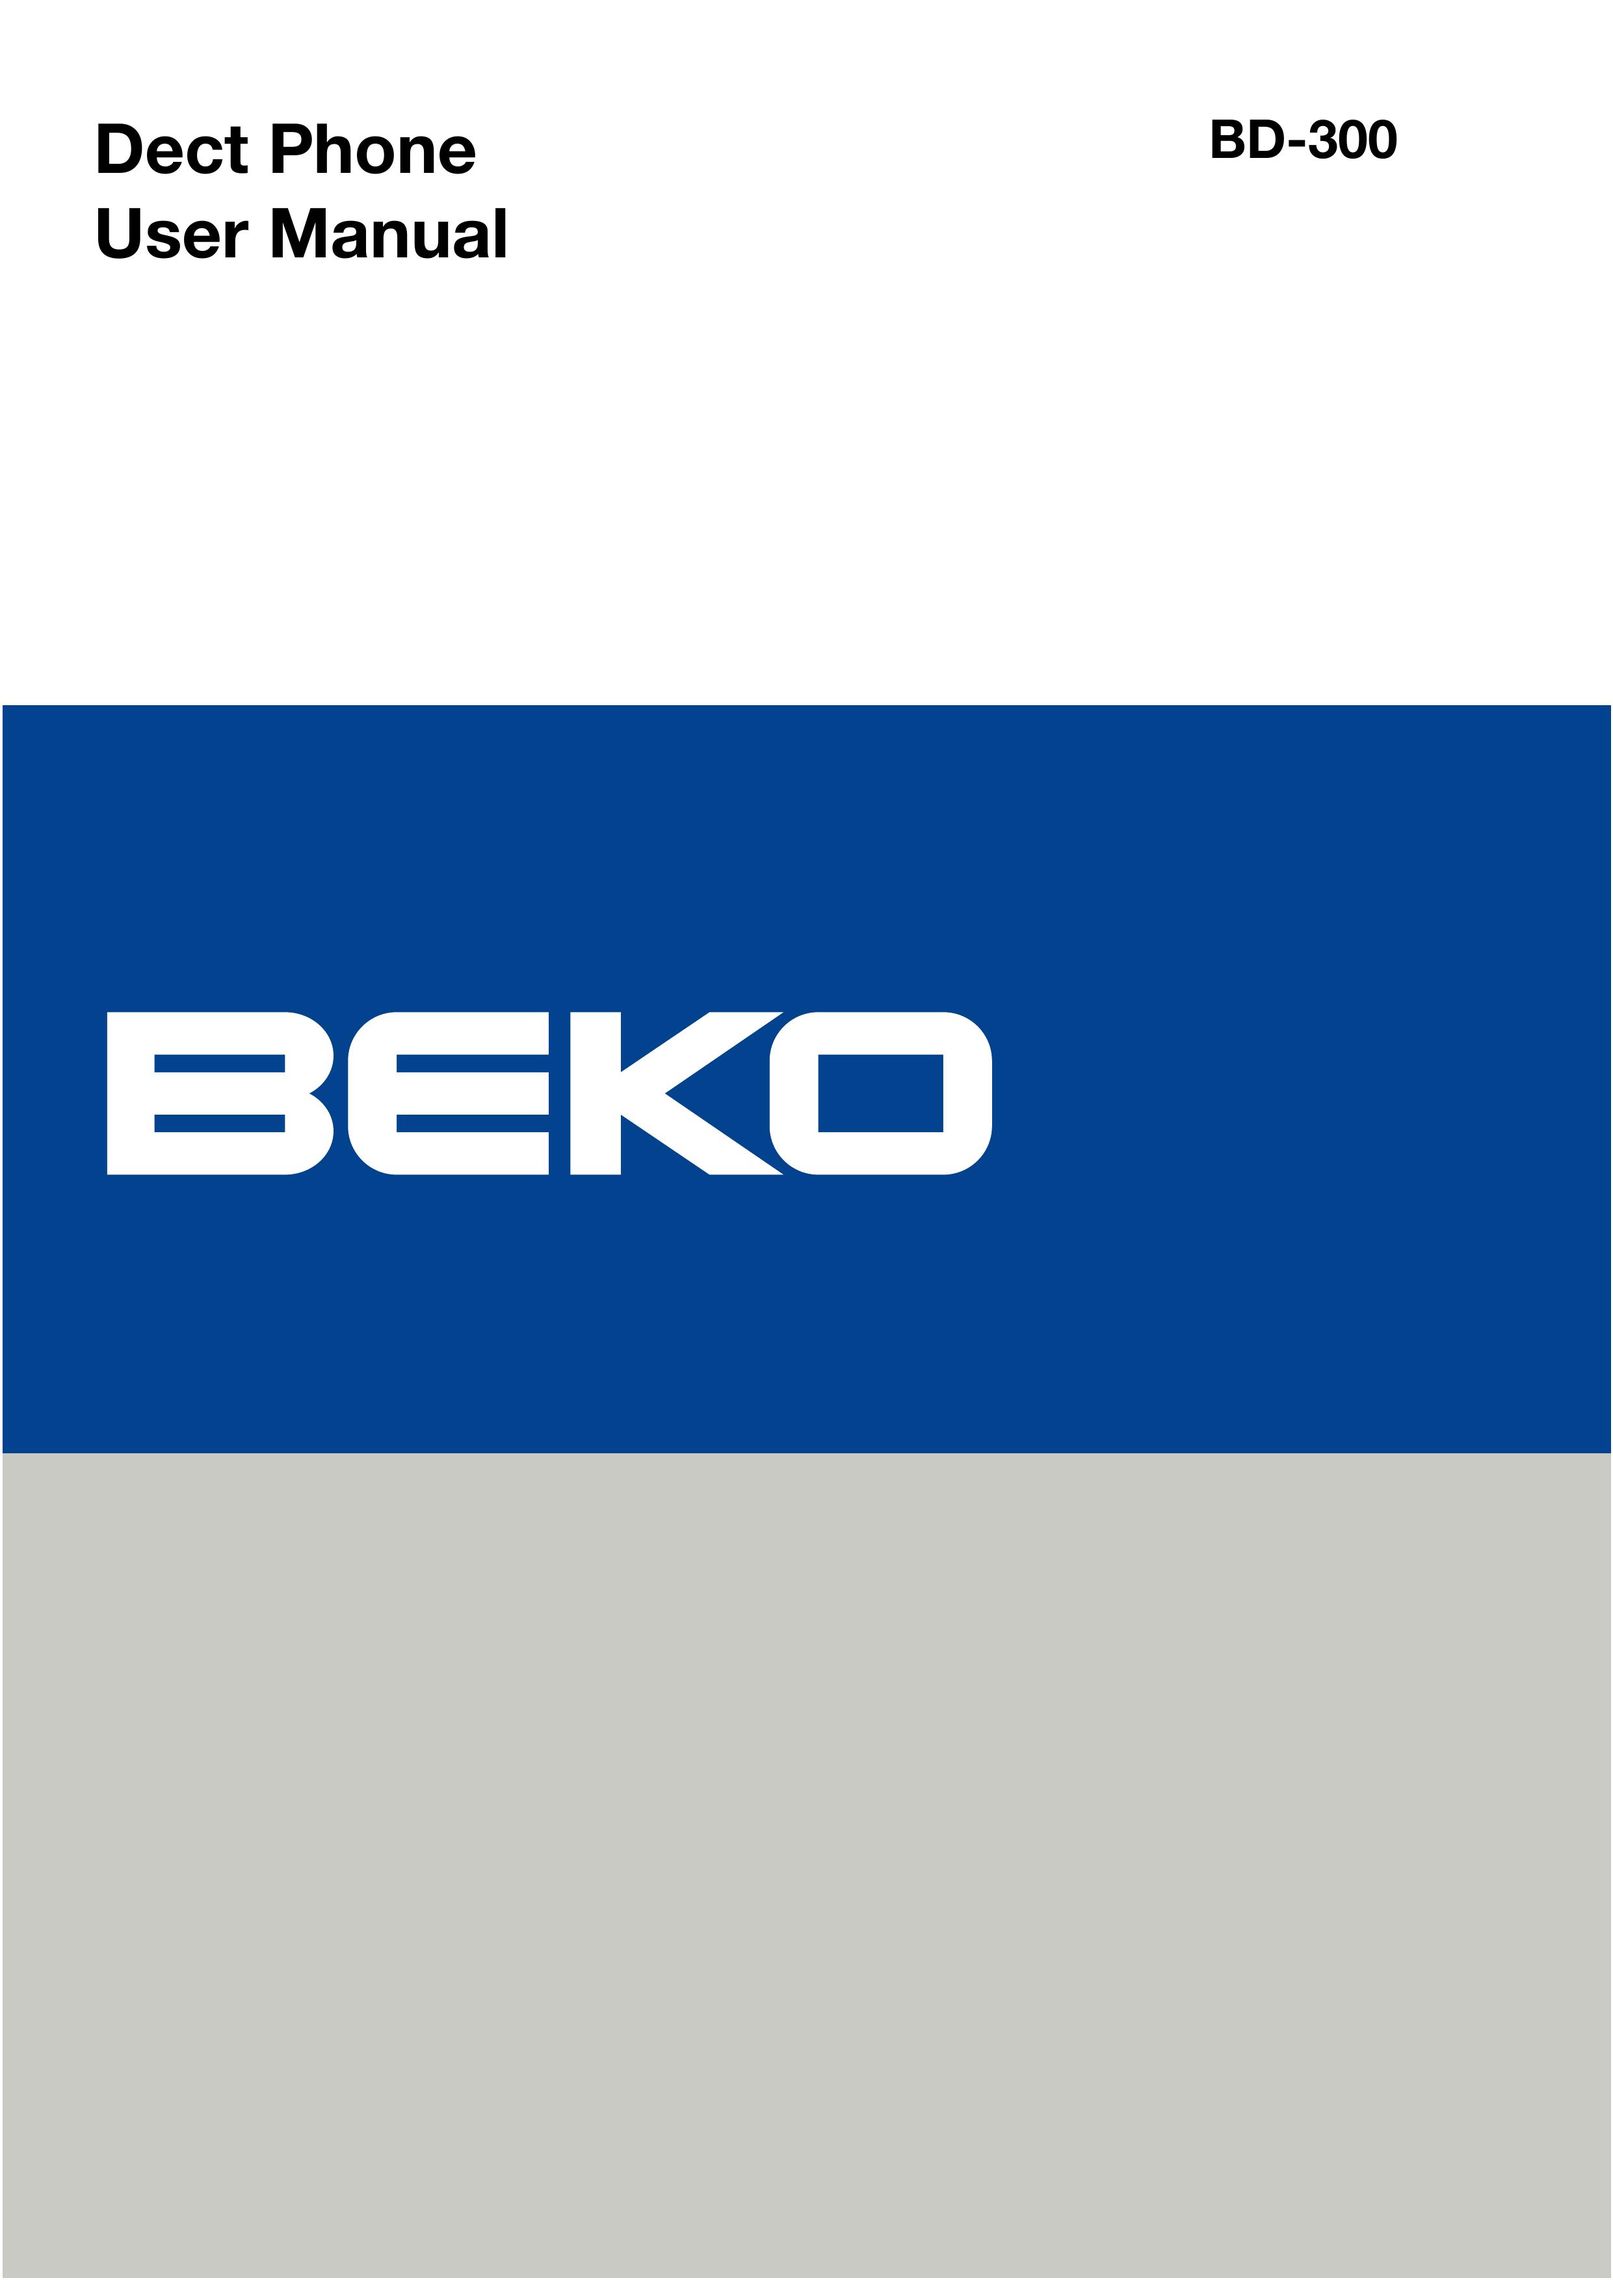 Beko BD-300 Telephone User Manual